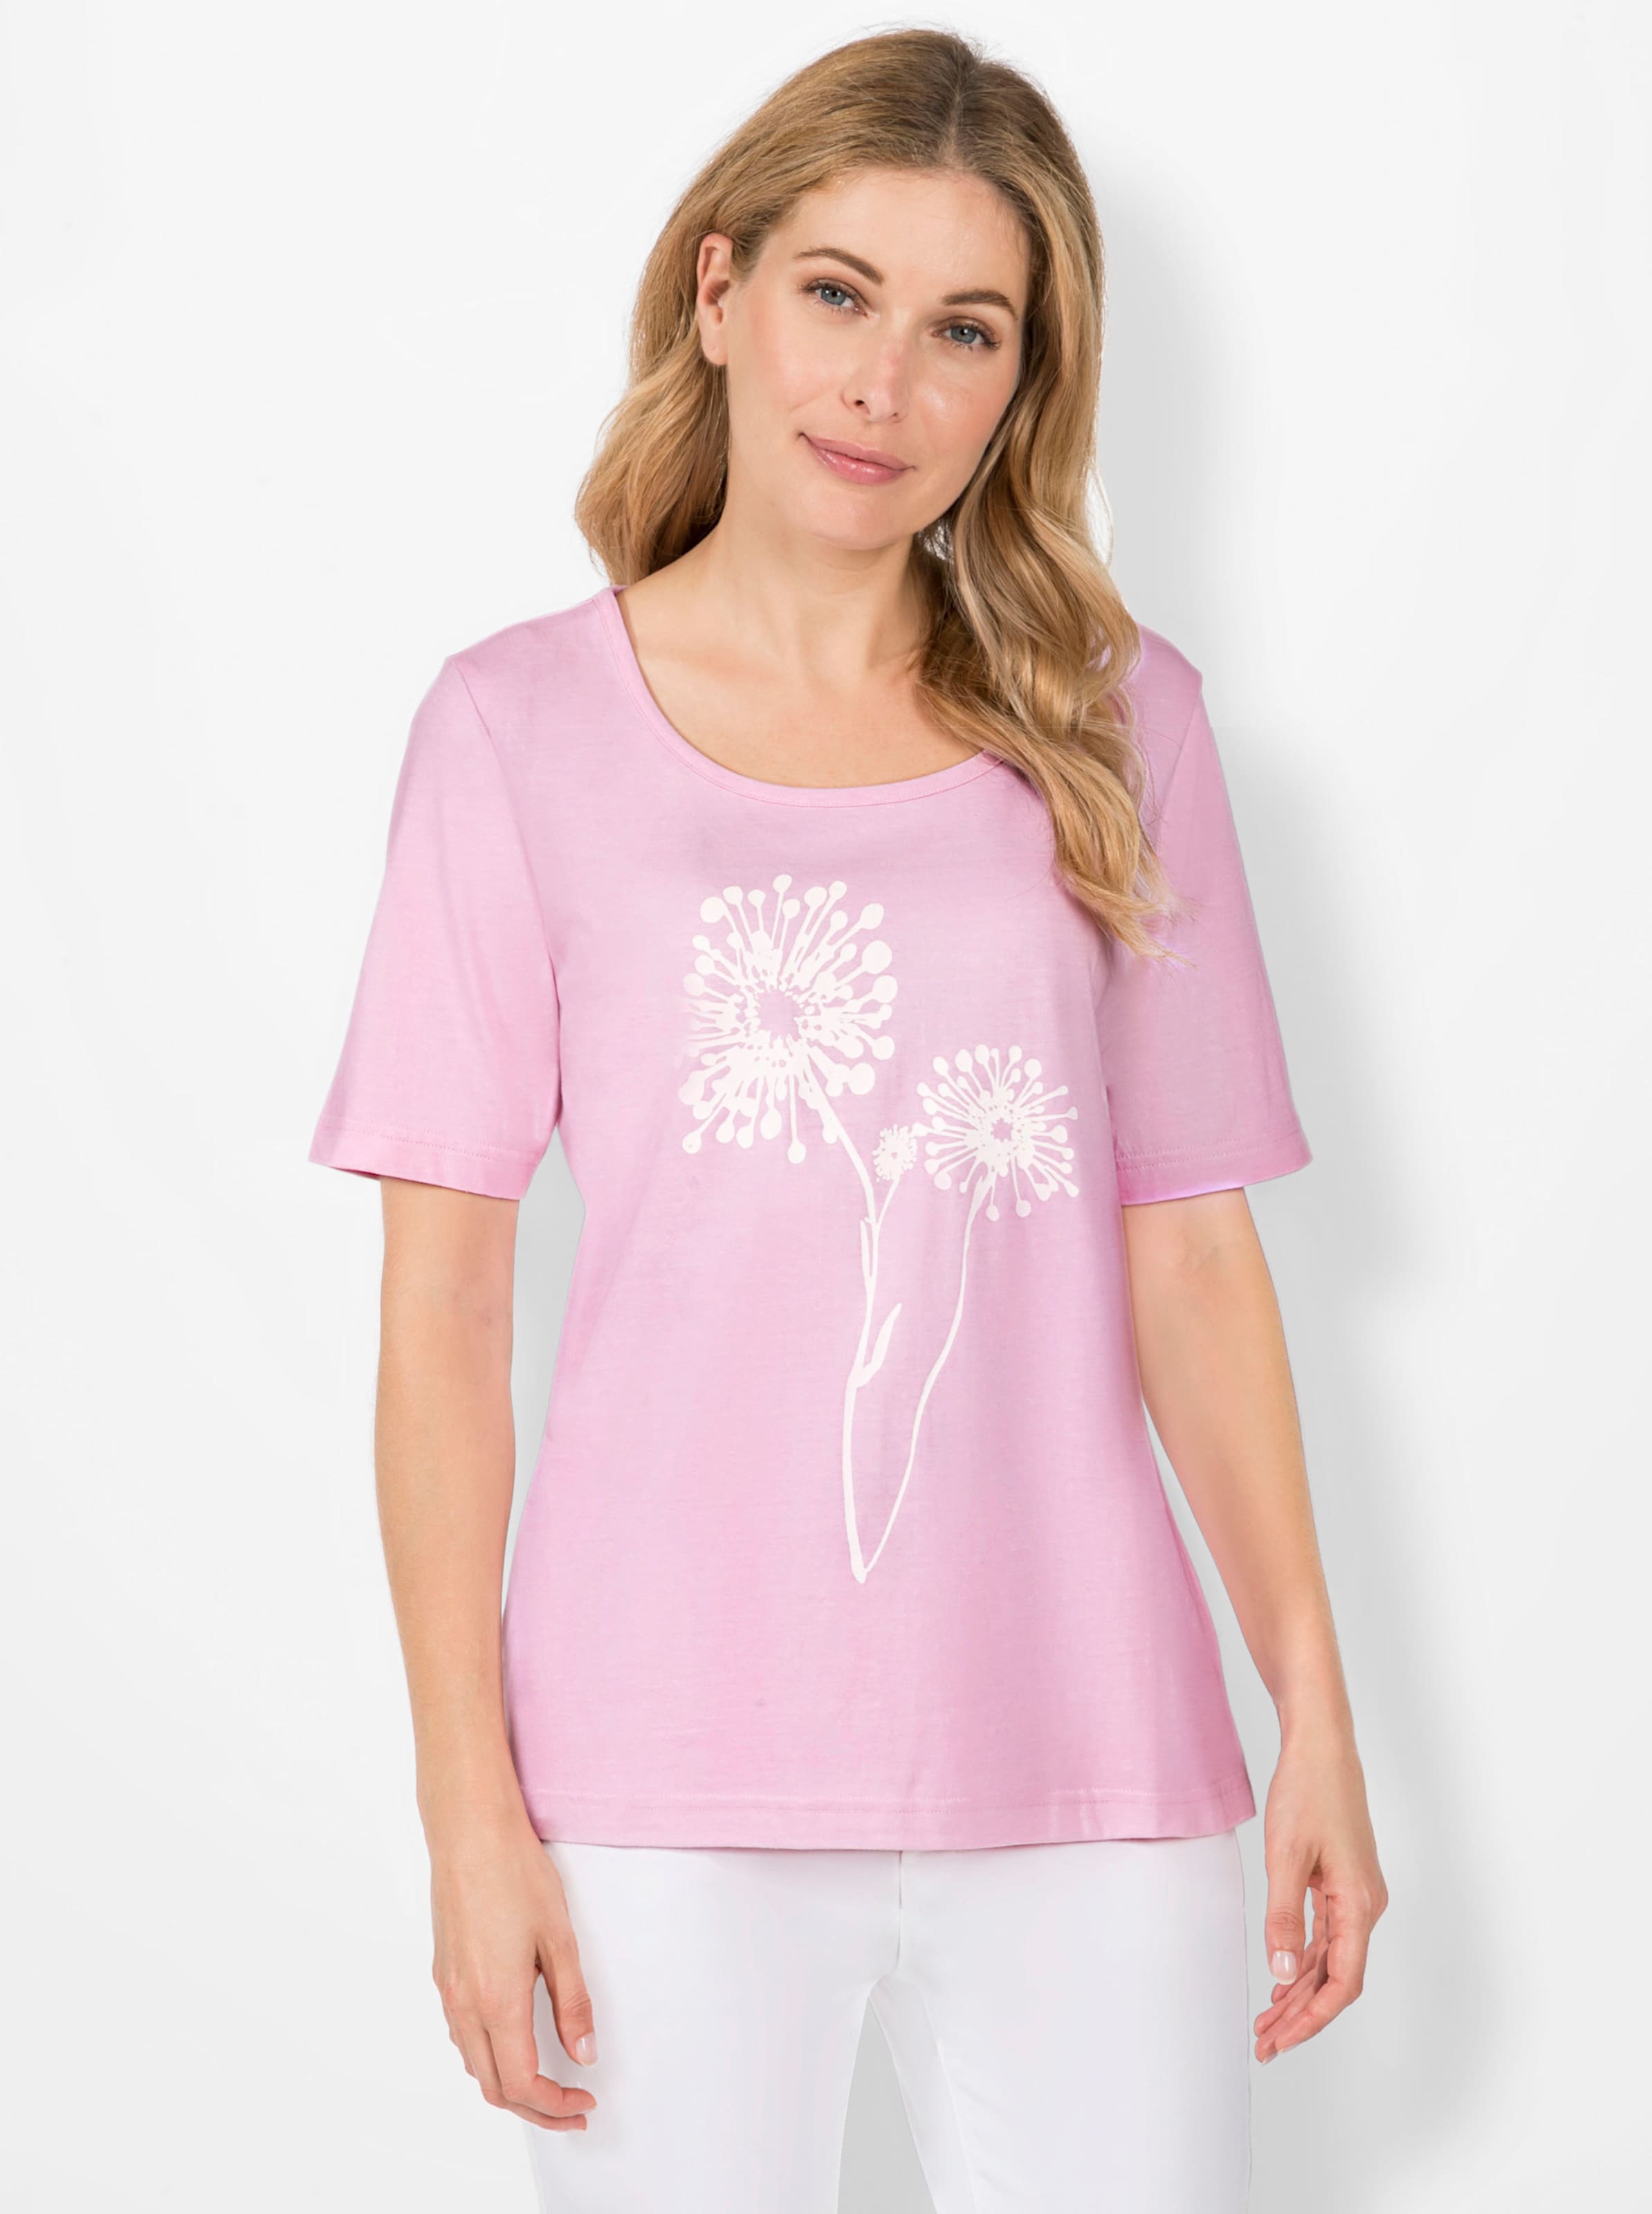 auch nicht günstig Kaufen-Print-Shirt in rosé von heine. Print-Shirt in rosé von heine <![CDATA[Pusteblumen haben uns schon als Kinder fasziniert – und weil sie auch heute nichts von ihrem Reiz verloren haben schmücken sie als wunderschönes Druck-Motiv dieses Shirt. 